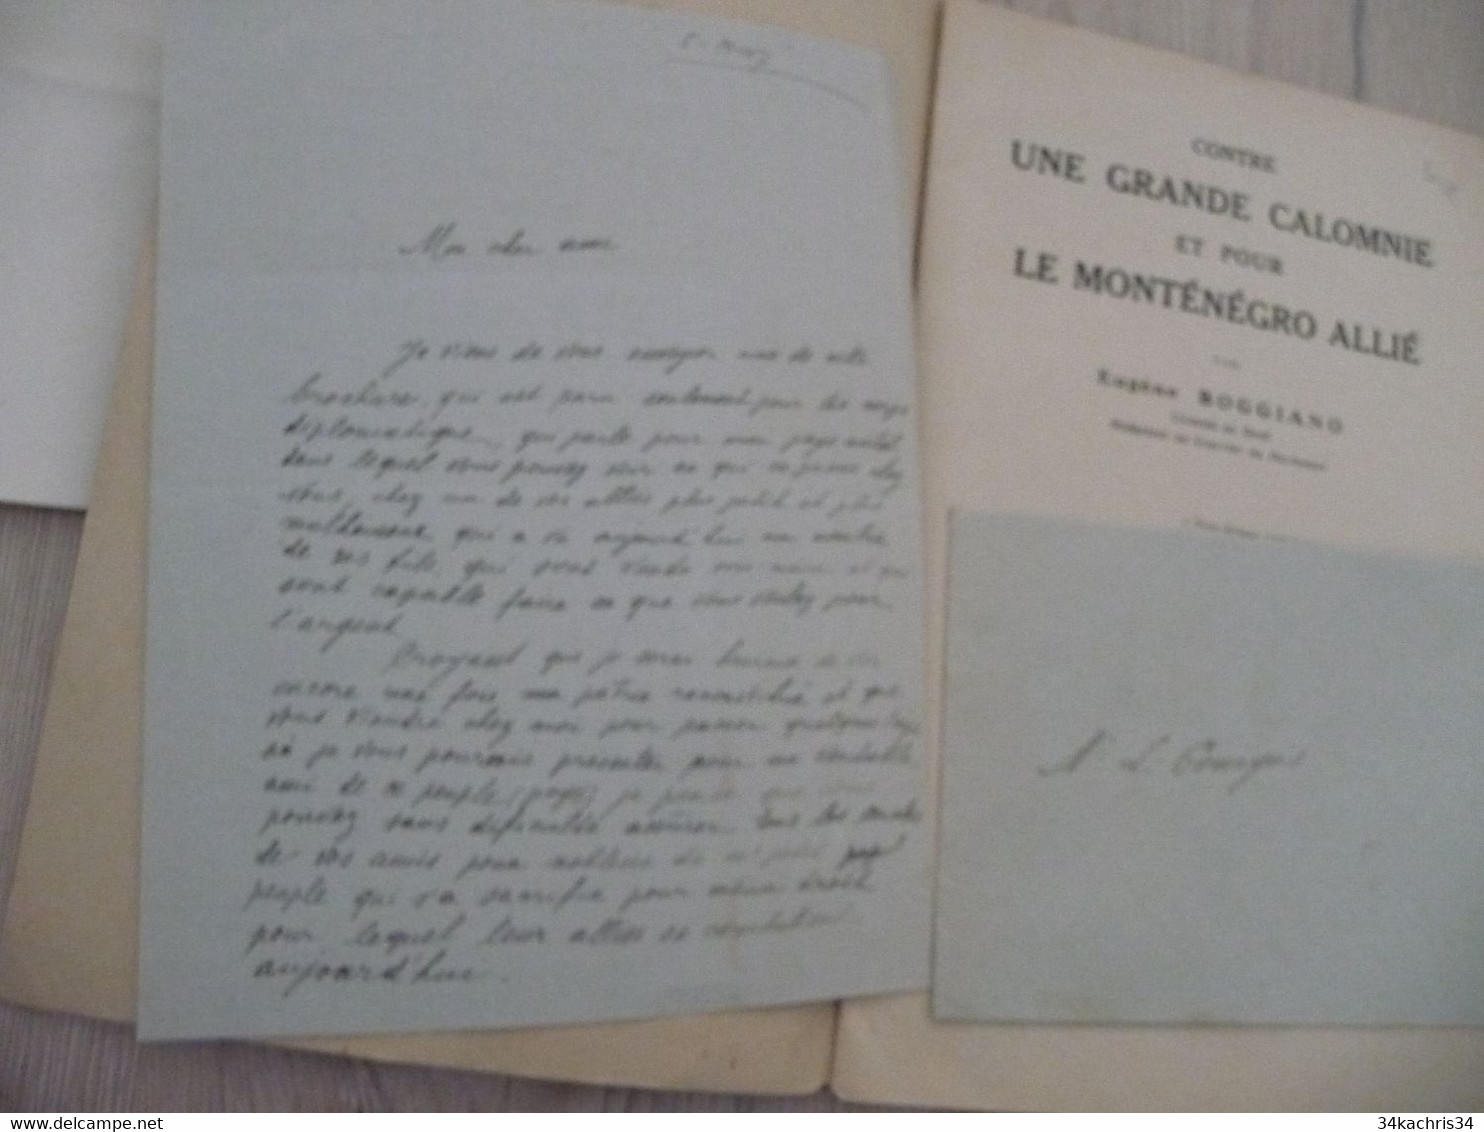 1917 Réservée Au Corps Diplomatique + Lettre Manuscrit Explicatif Boggiano Contre Une Grande Calomnie Pour Le Monténégro - Documents